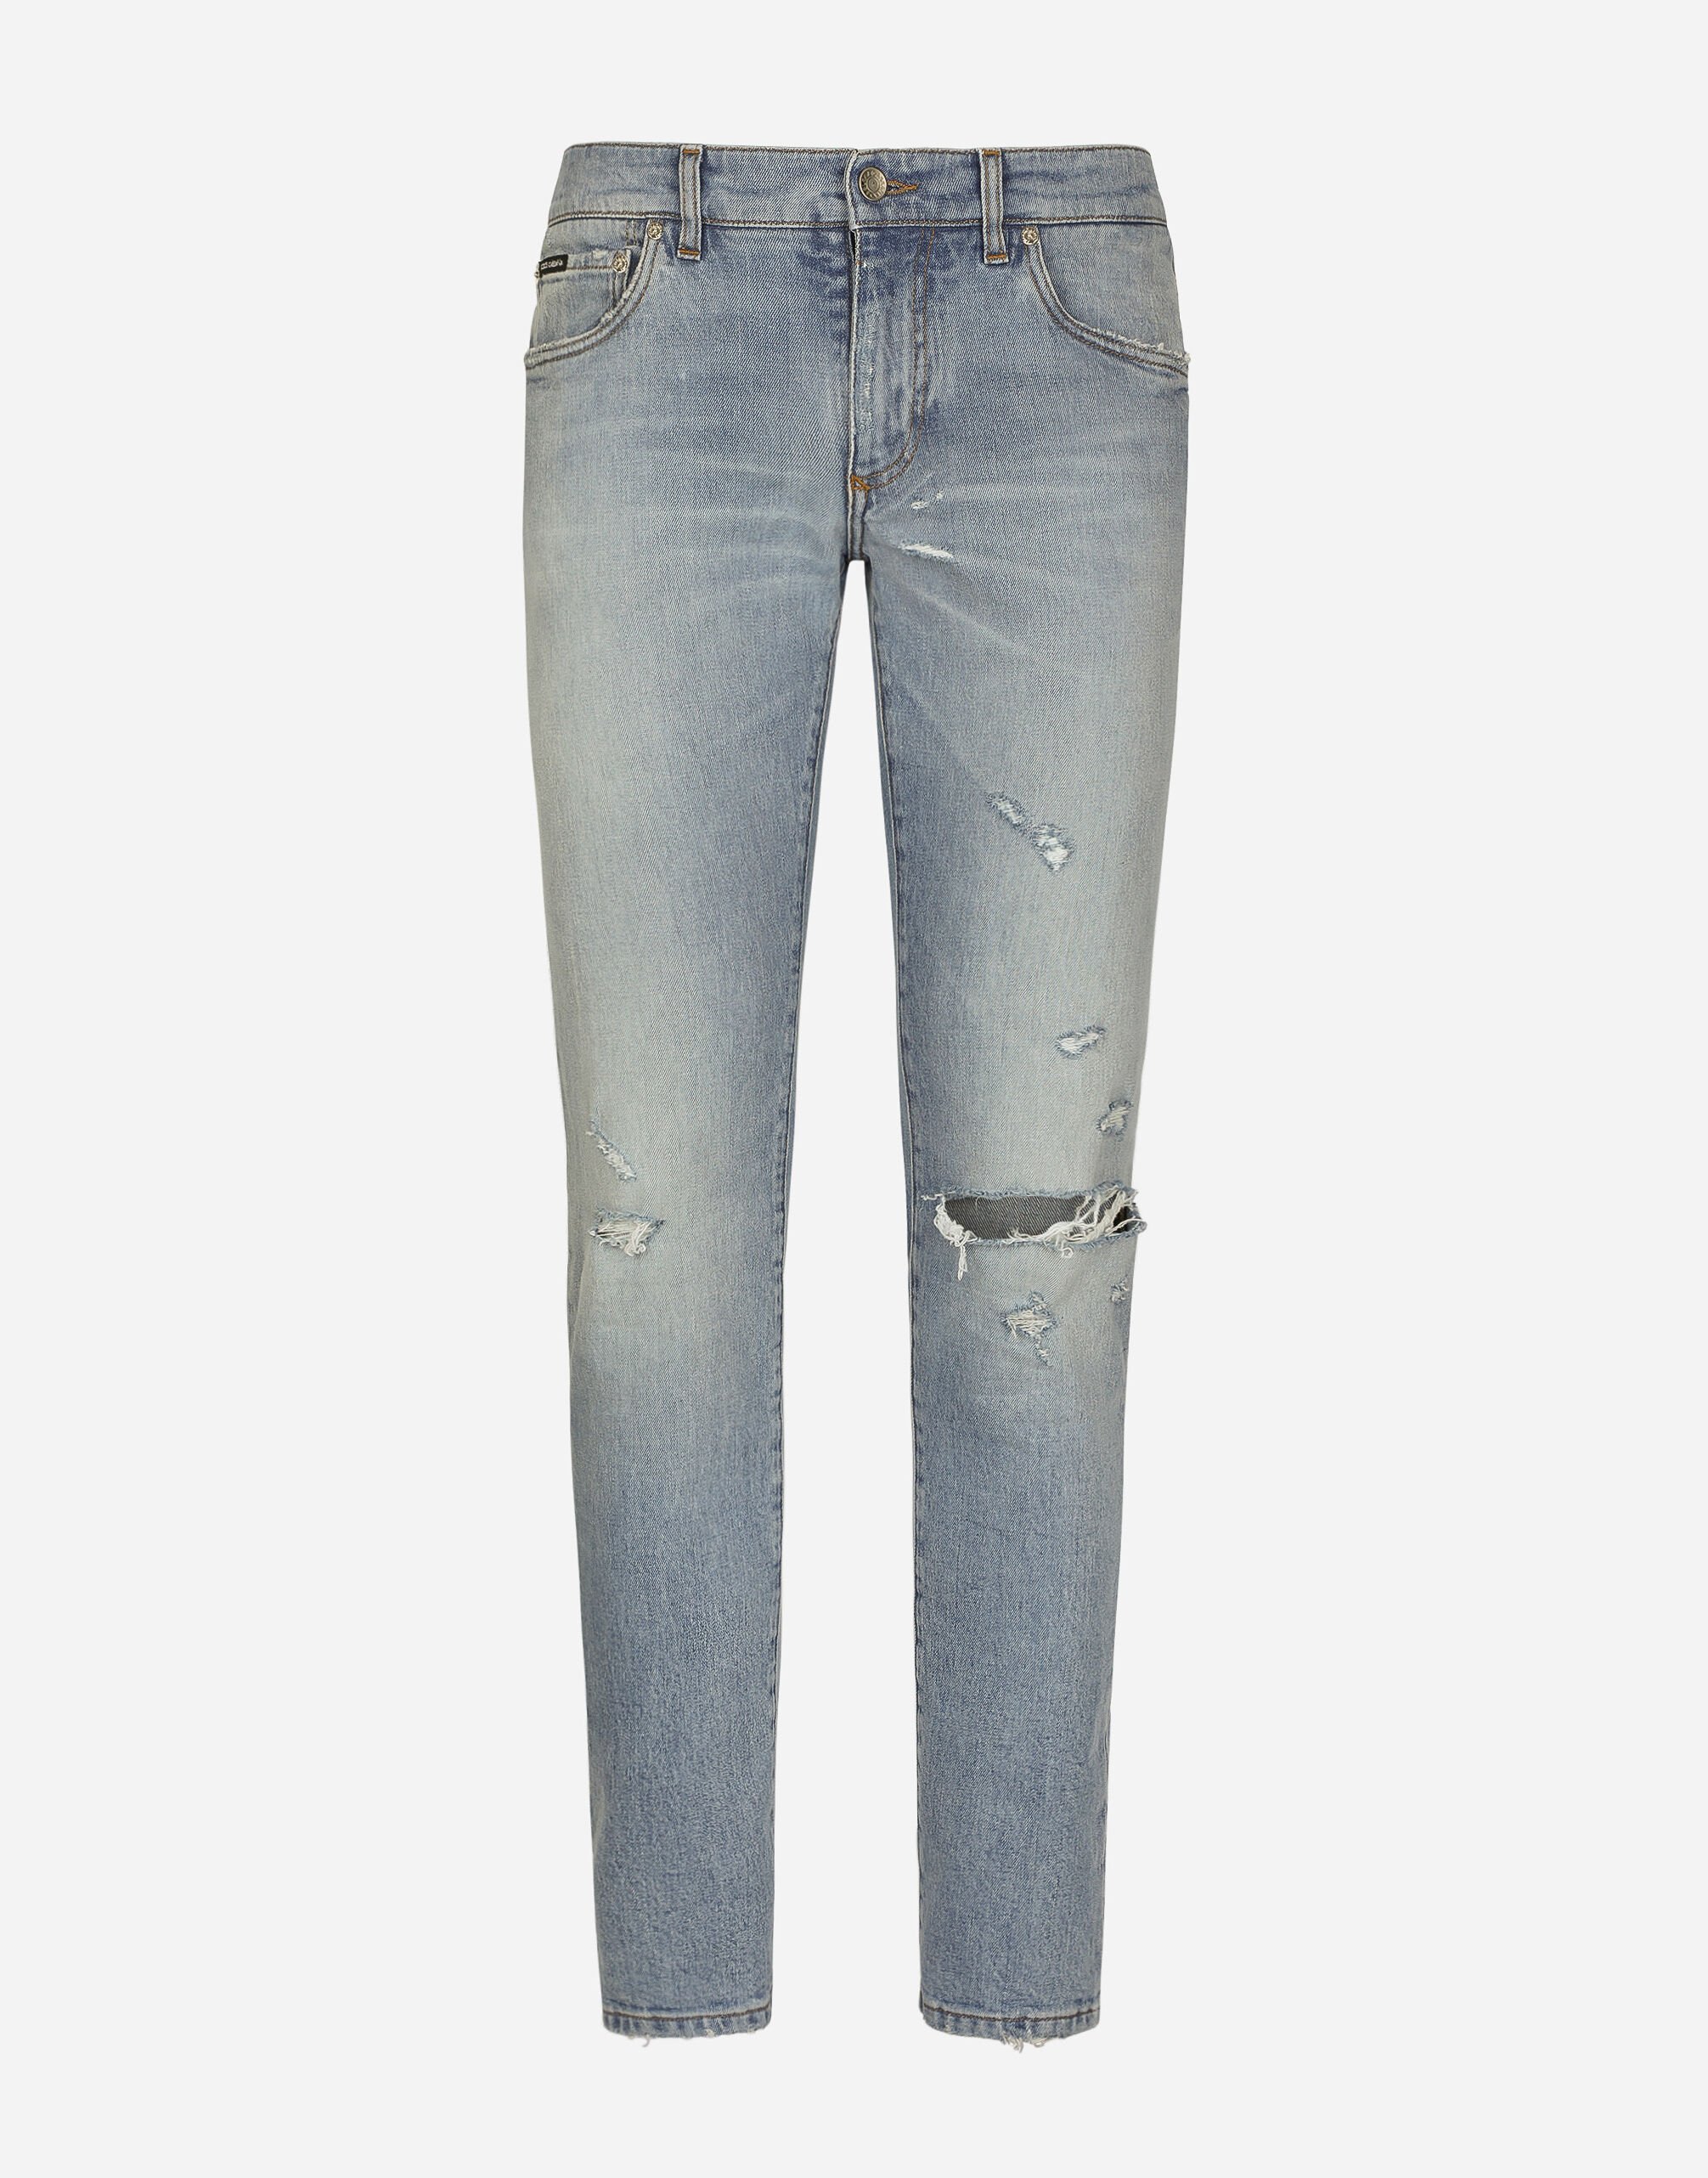 Dolce & Gabbana Jeans Skinny aus Stretchdenim gewaschen Mehrfarbig G9NL5DG8GW9